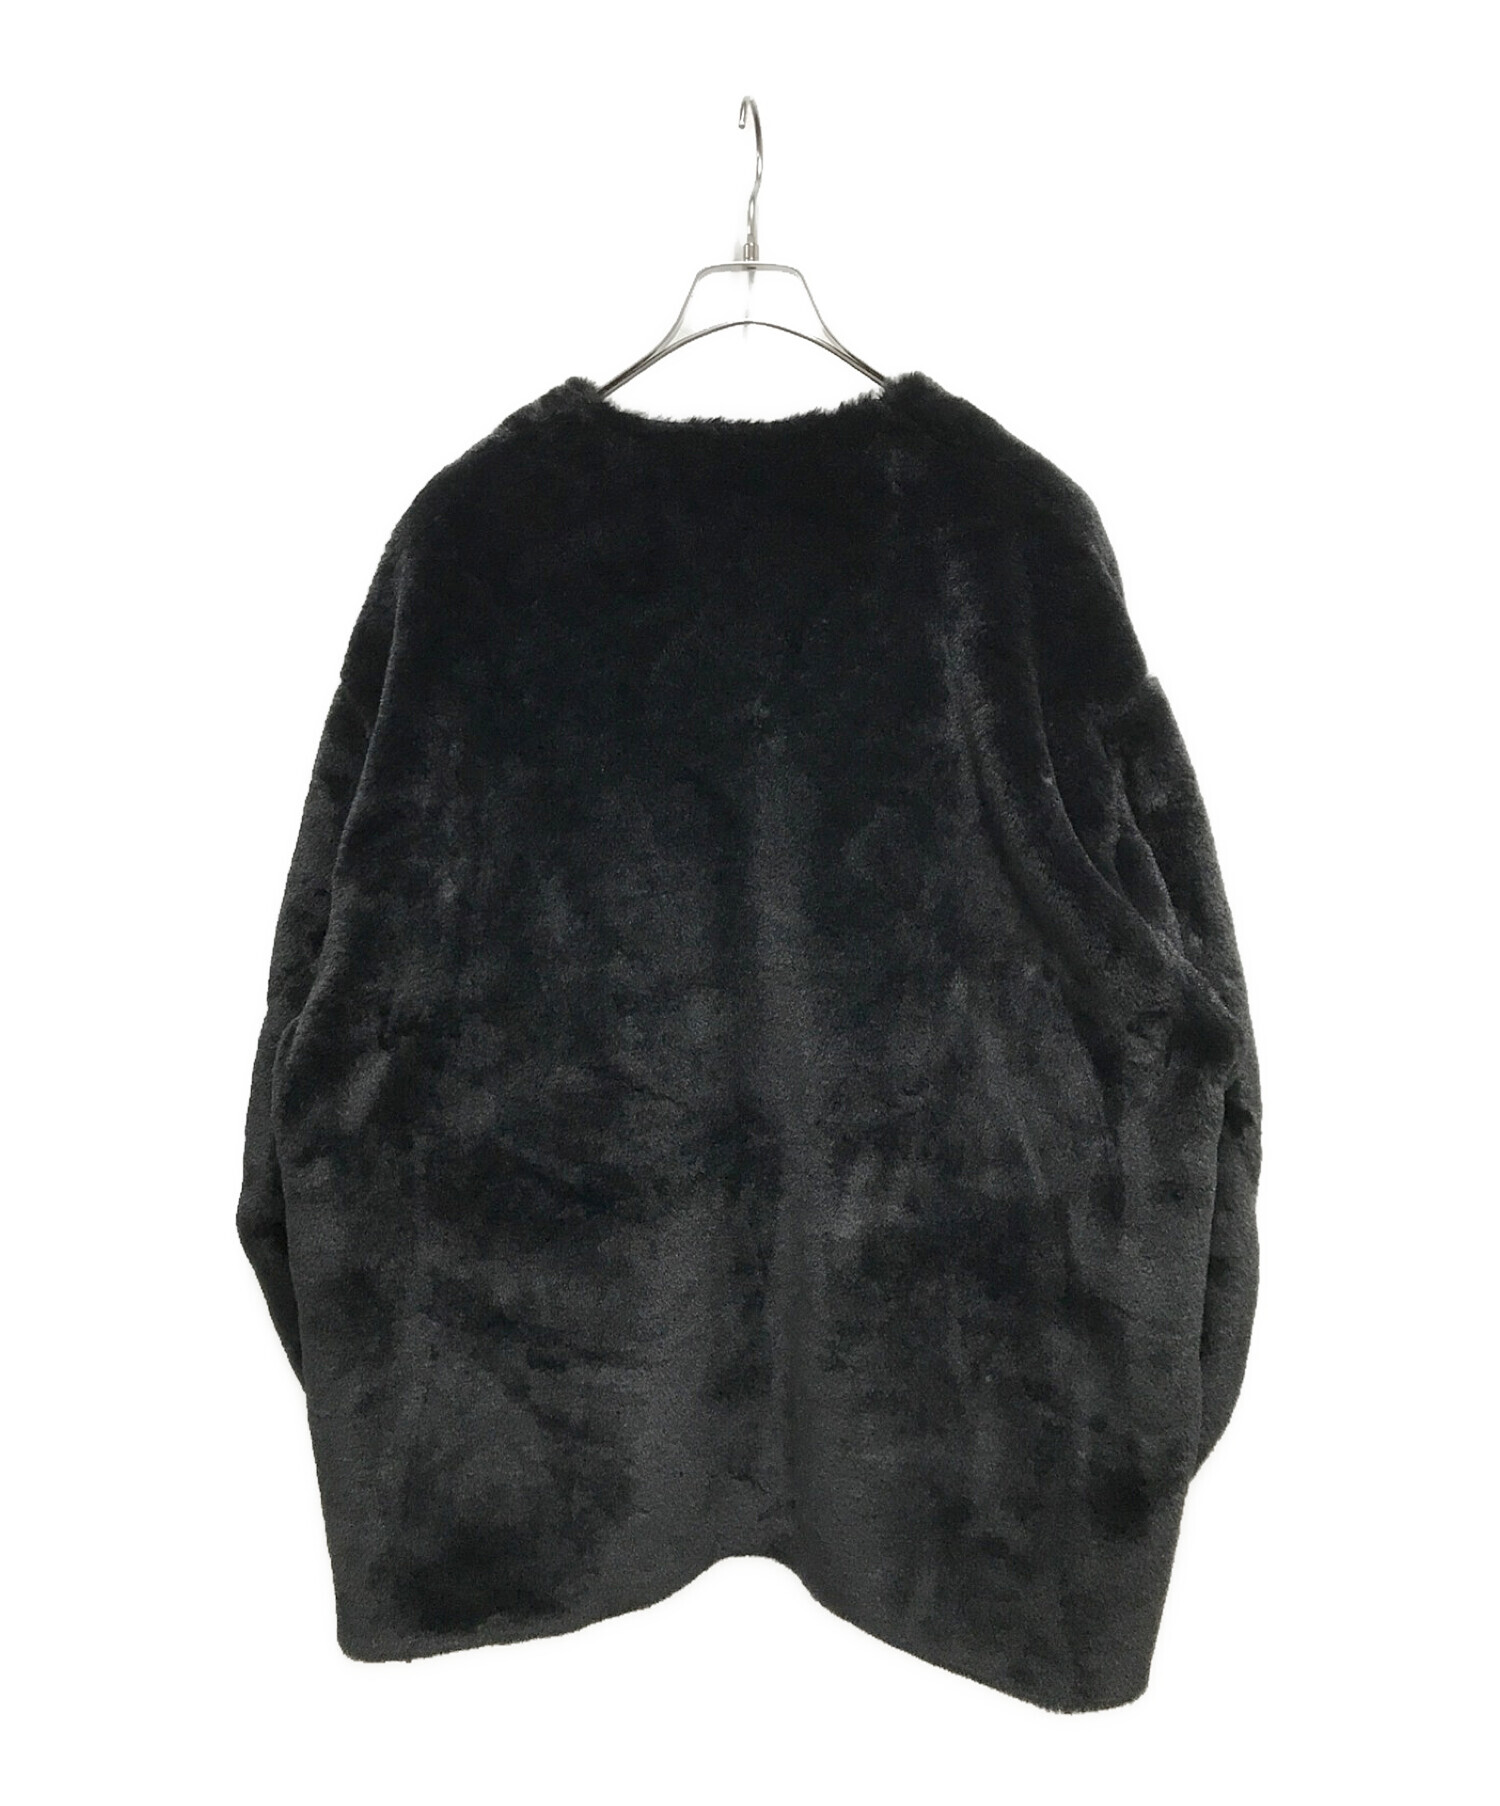 08sircus (ゼロエイトサーカス) エアコファーカラーレスジャケット / Eco fur collarless jacket ブラック サイズ:4